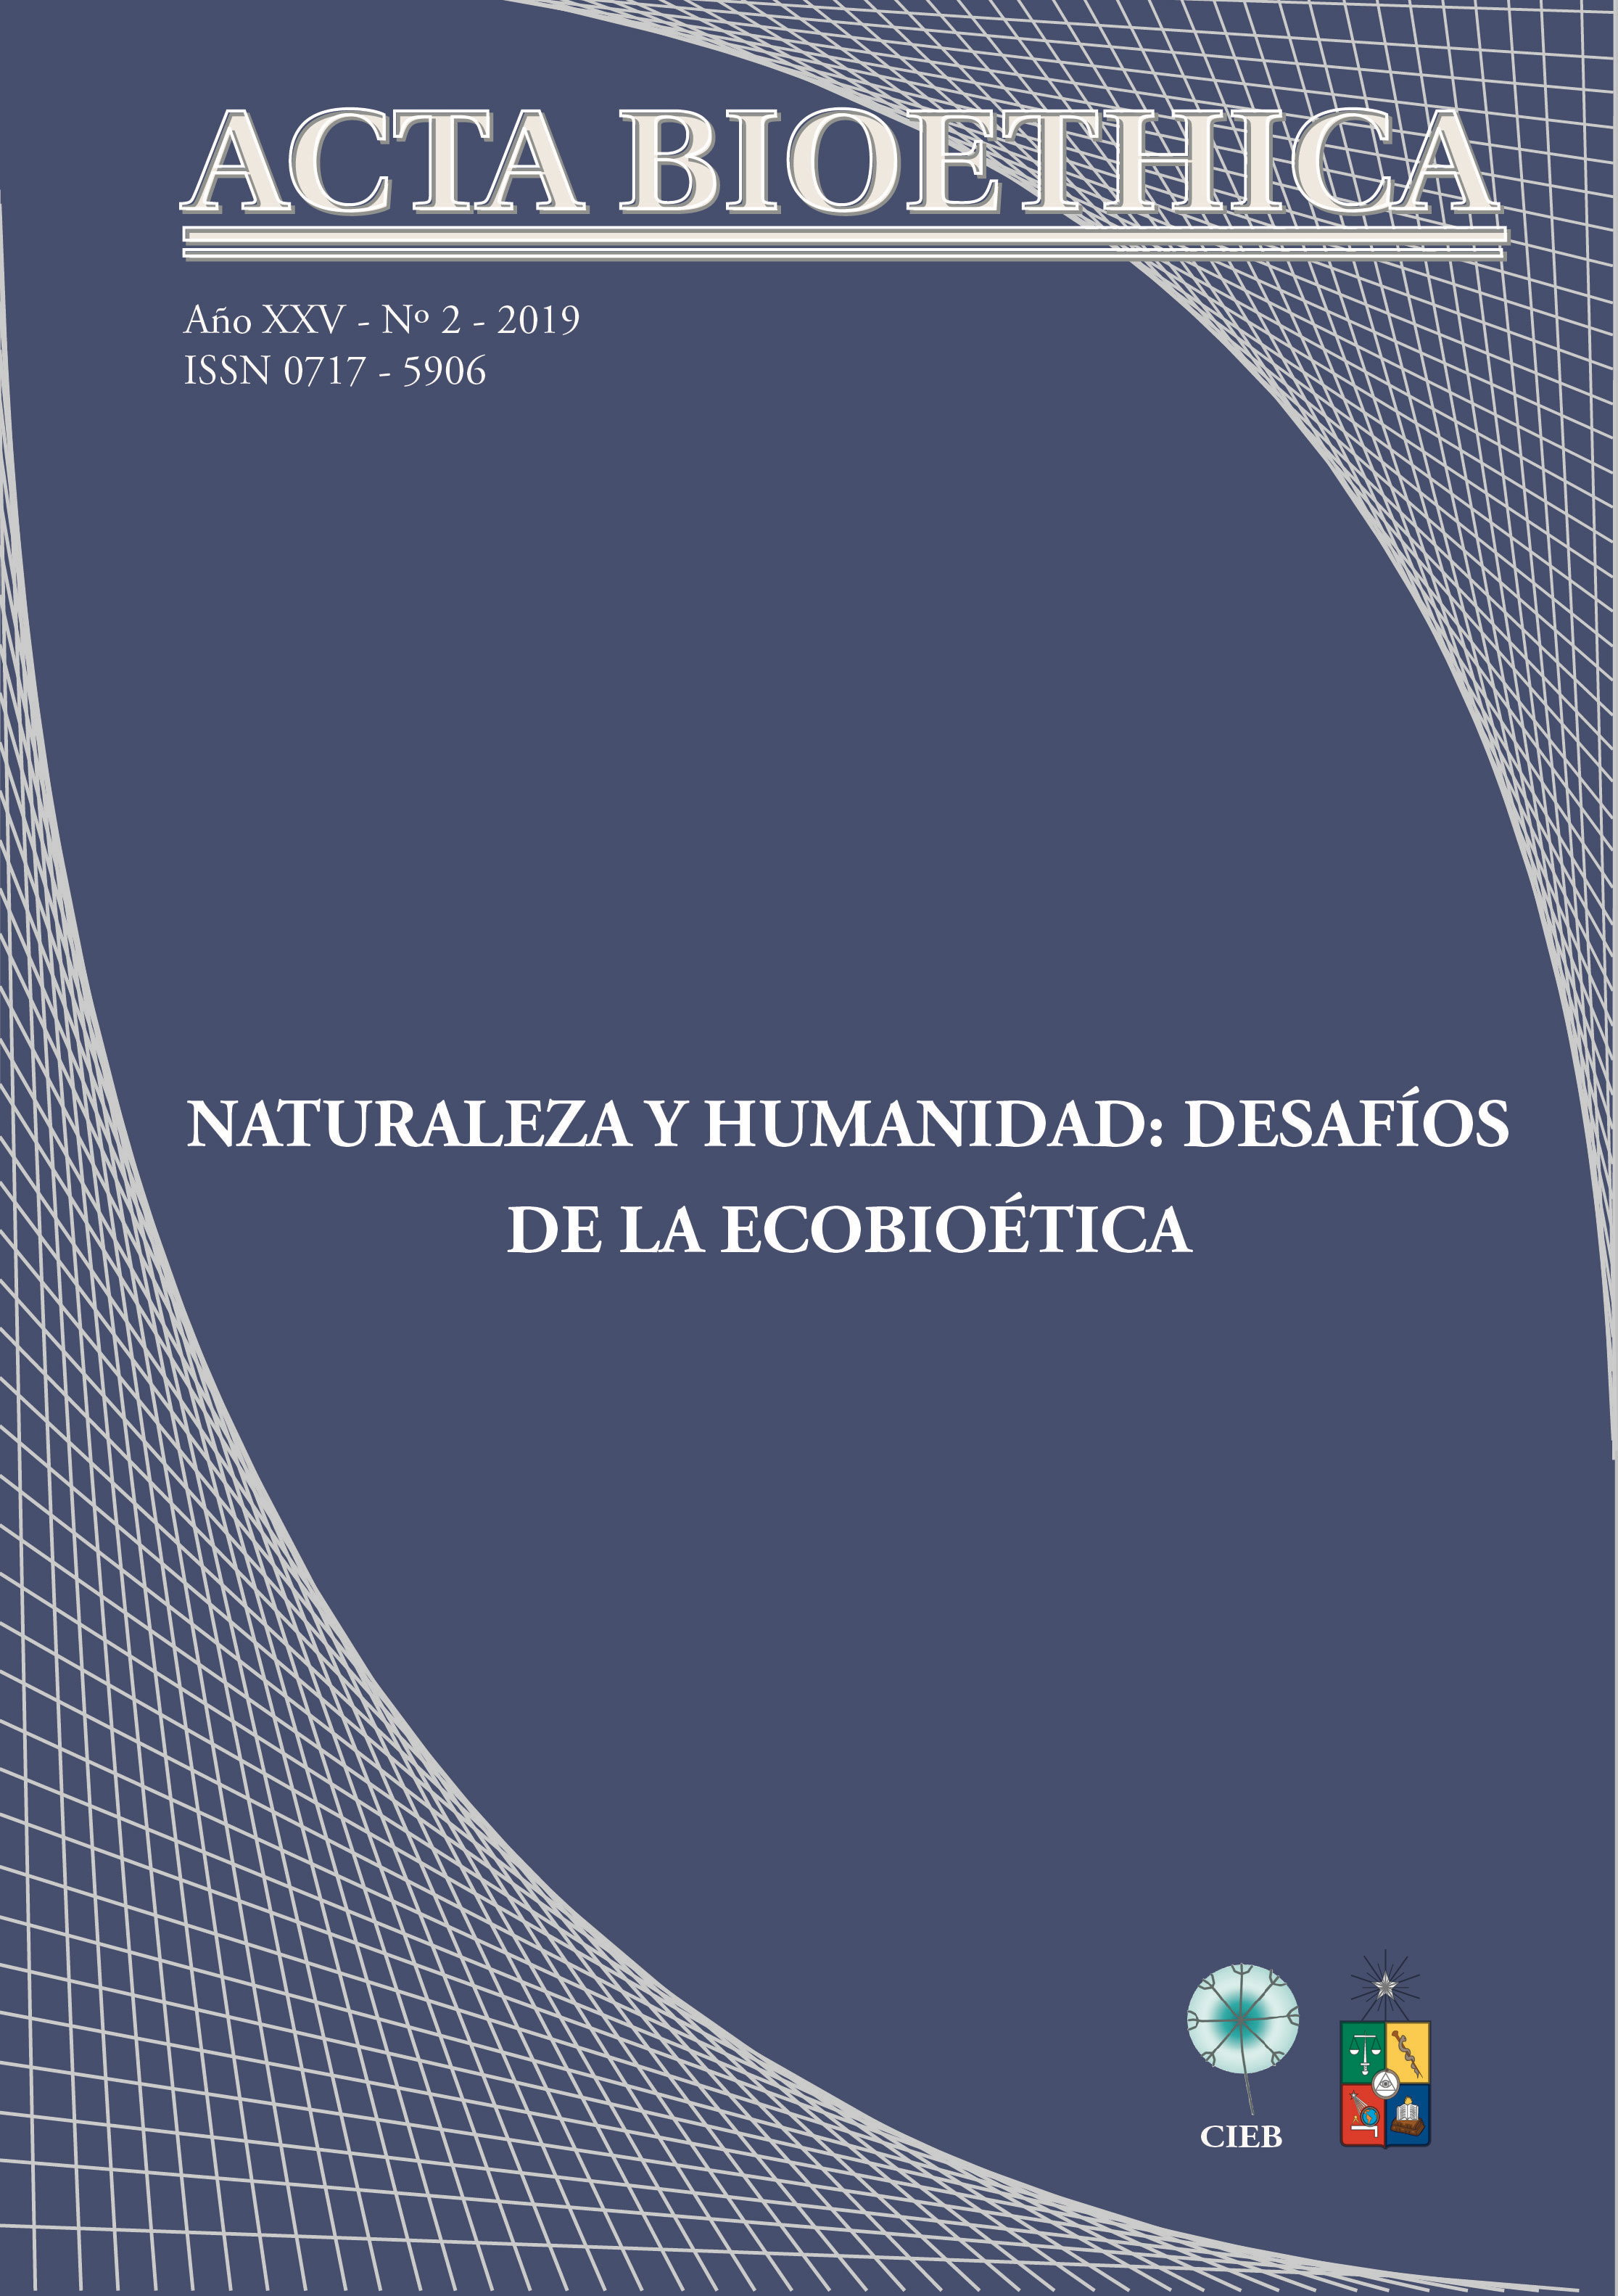 							Visualizar v. 25 n. 2 (2019): Naturaleza y humanidad: desafíos de la ecobioética
						